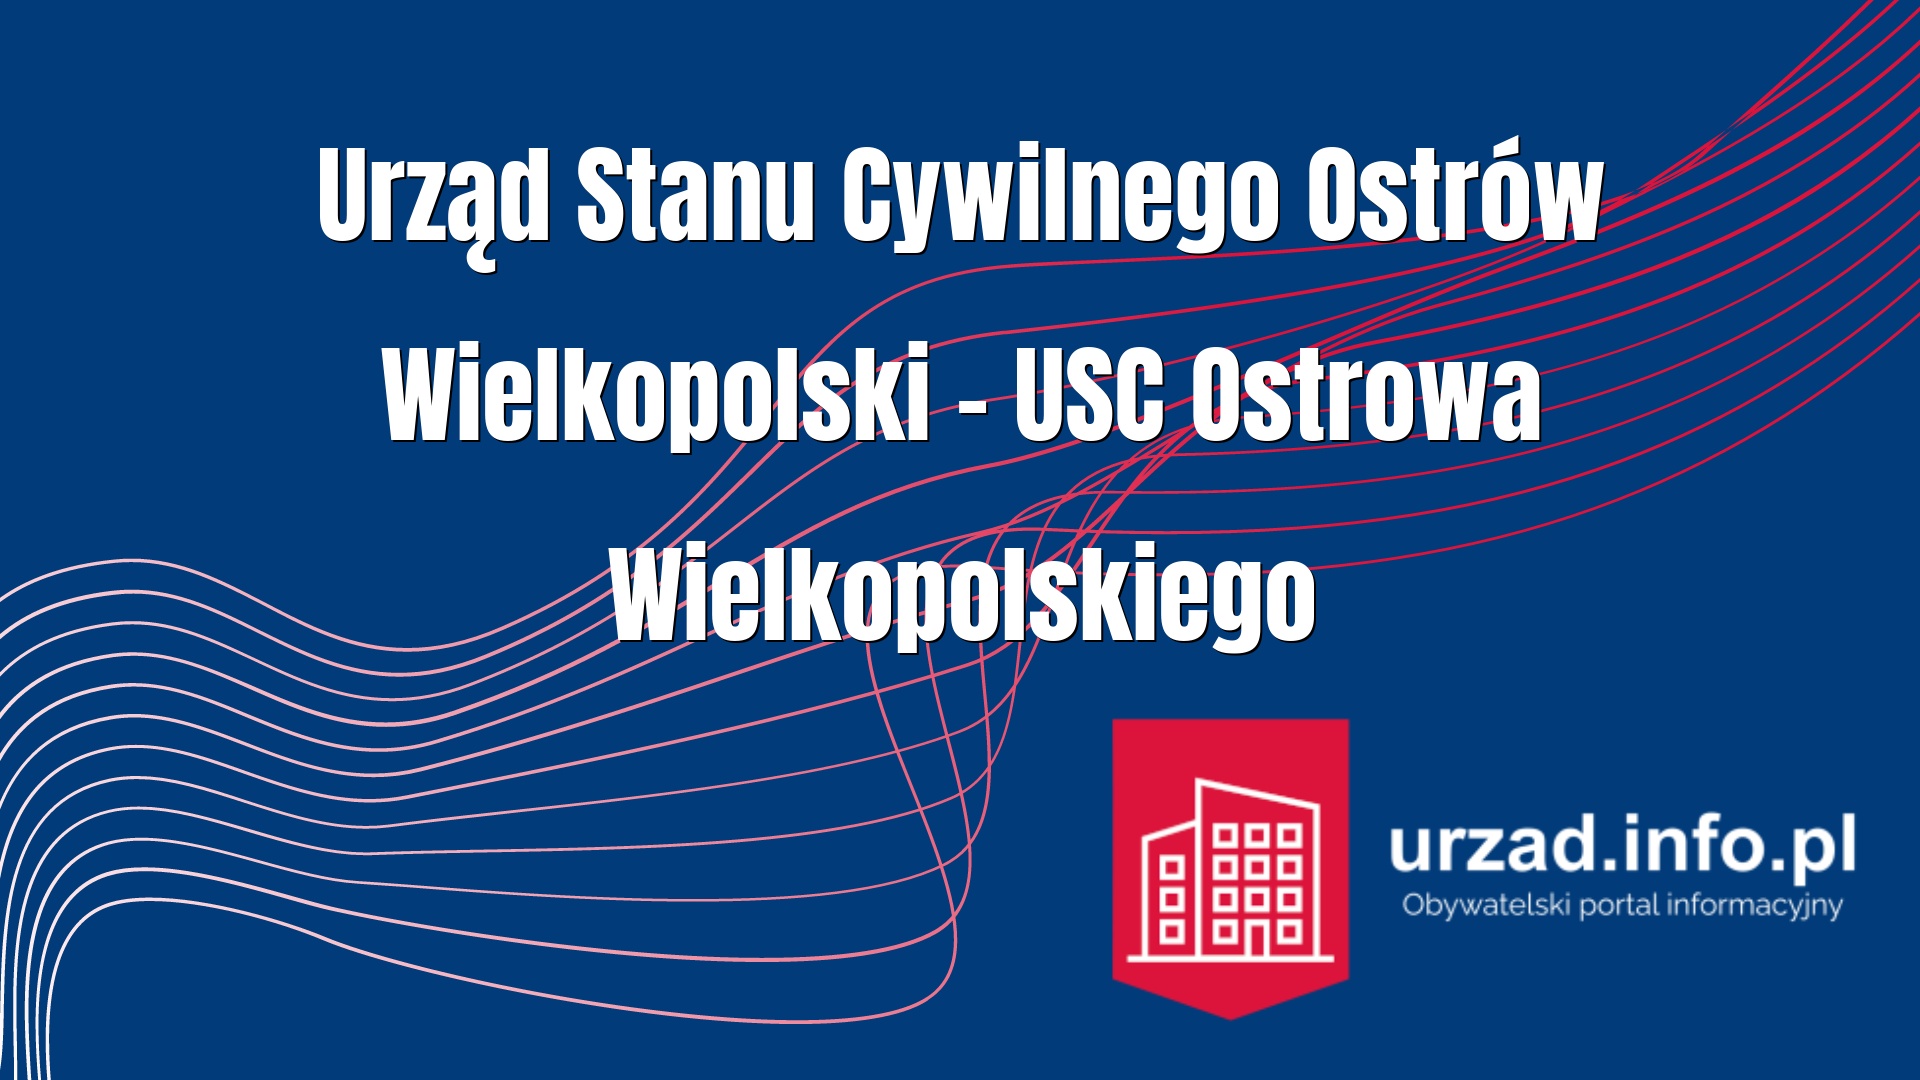 Urząd Stanu Cywilnego Ostrów Wielkopolski – USC Ostrowa Wielkopolskiego